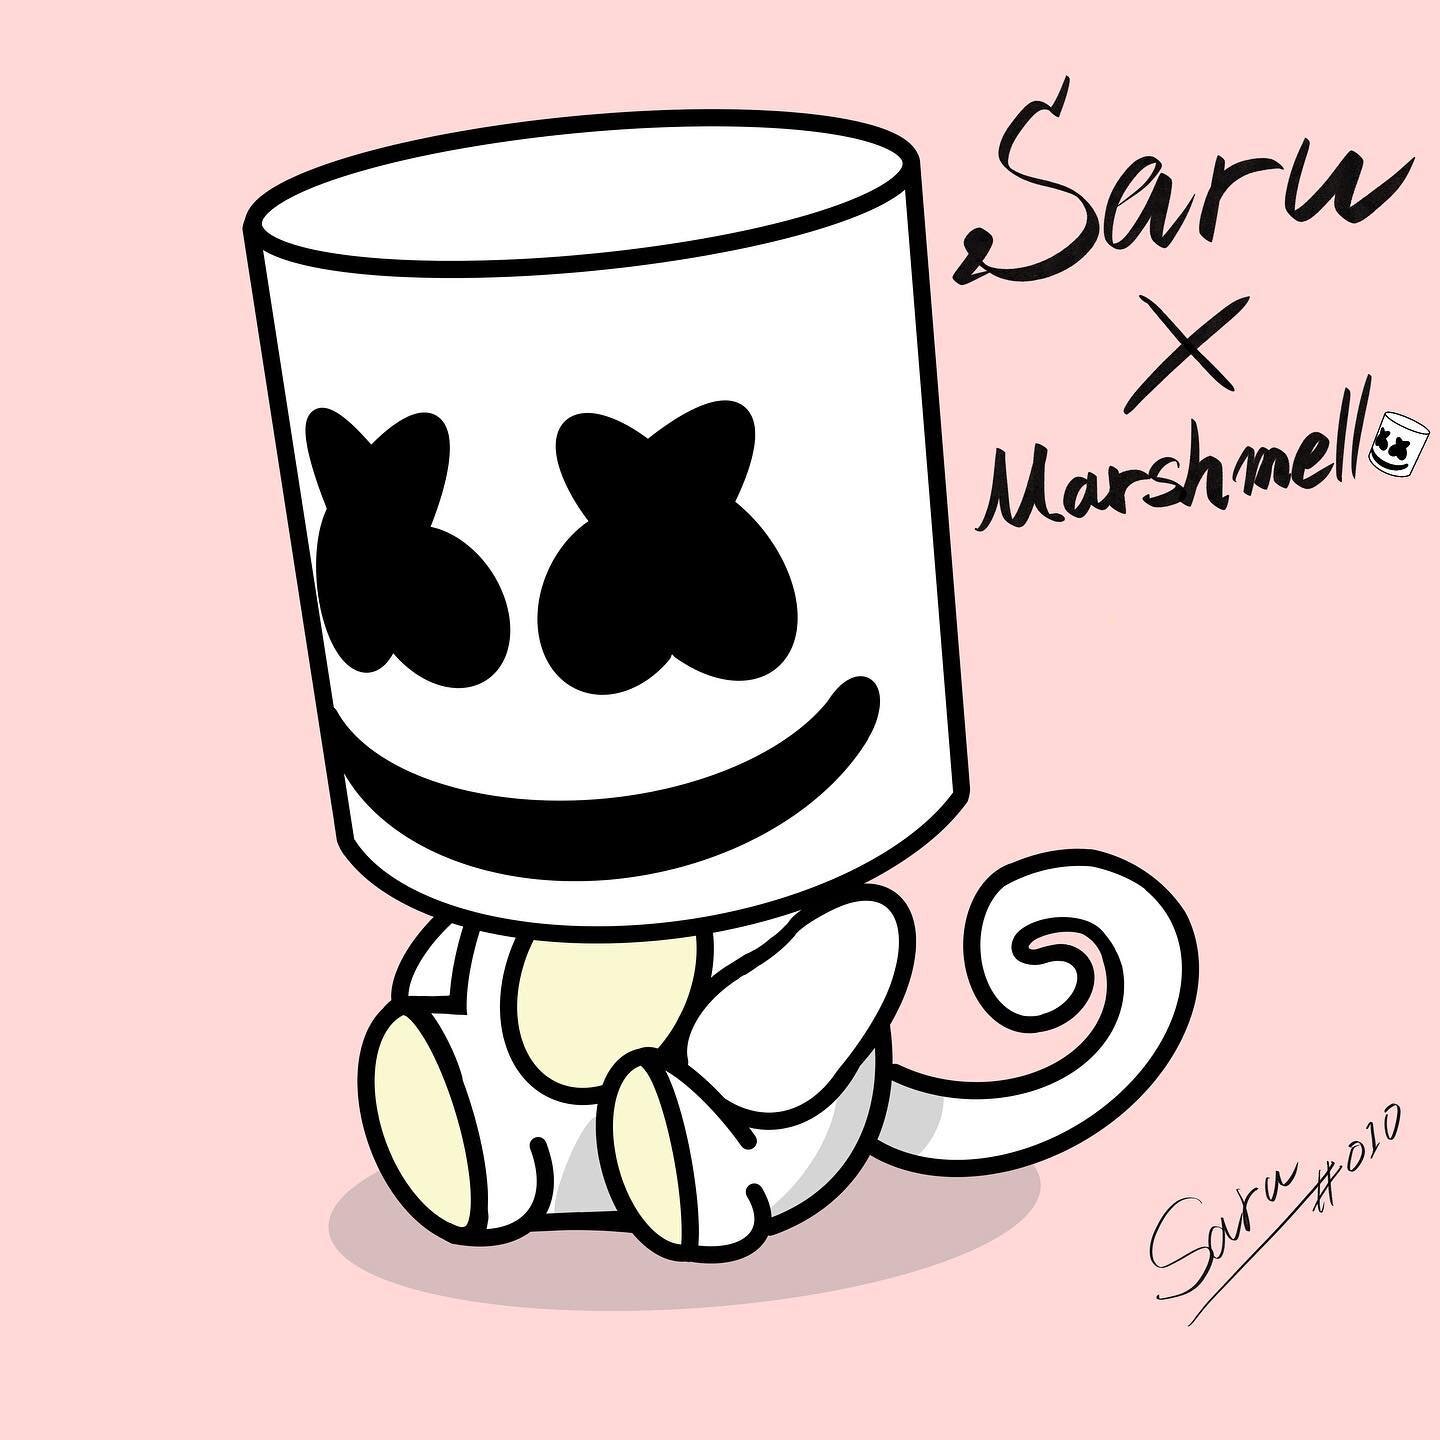 Sarumello #010 by @sarupto

Saru x Marshmello
#mashmellow #mashmellofanart